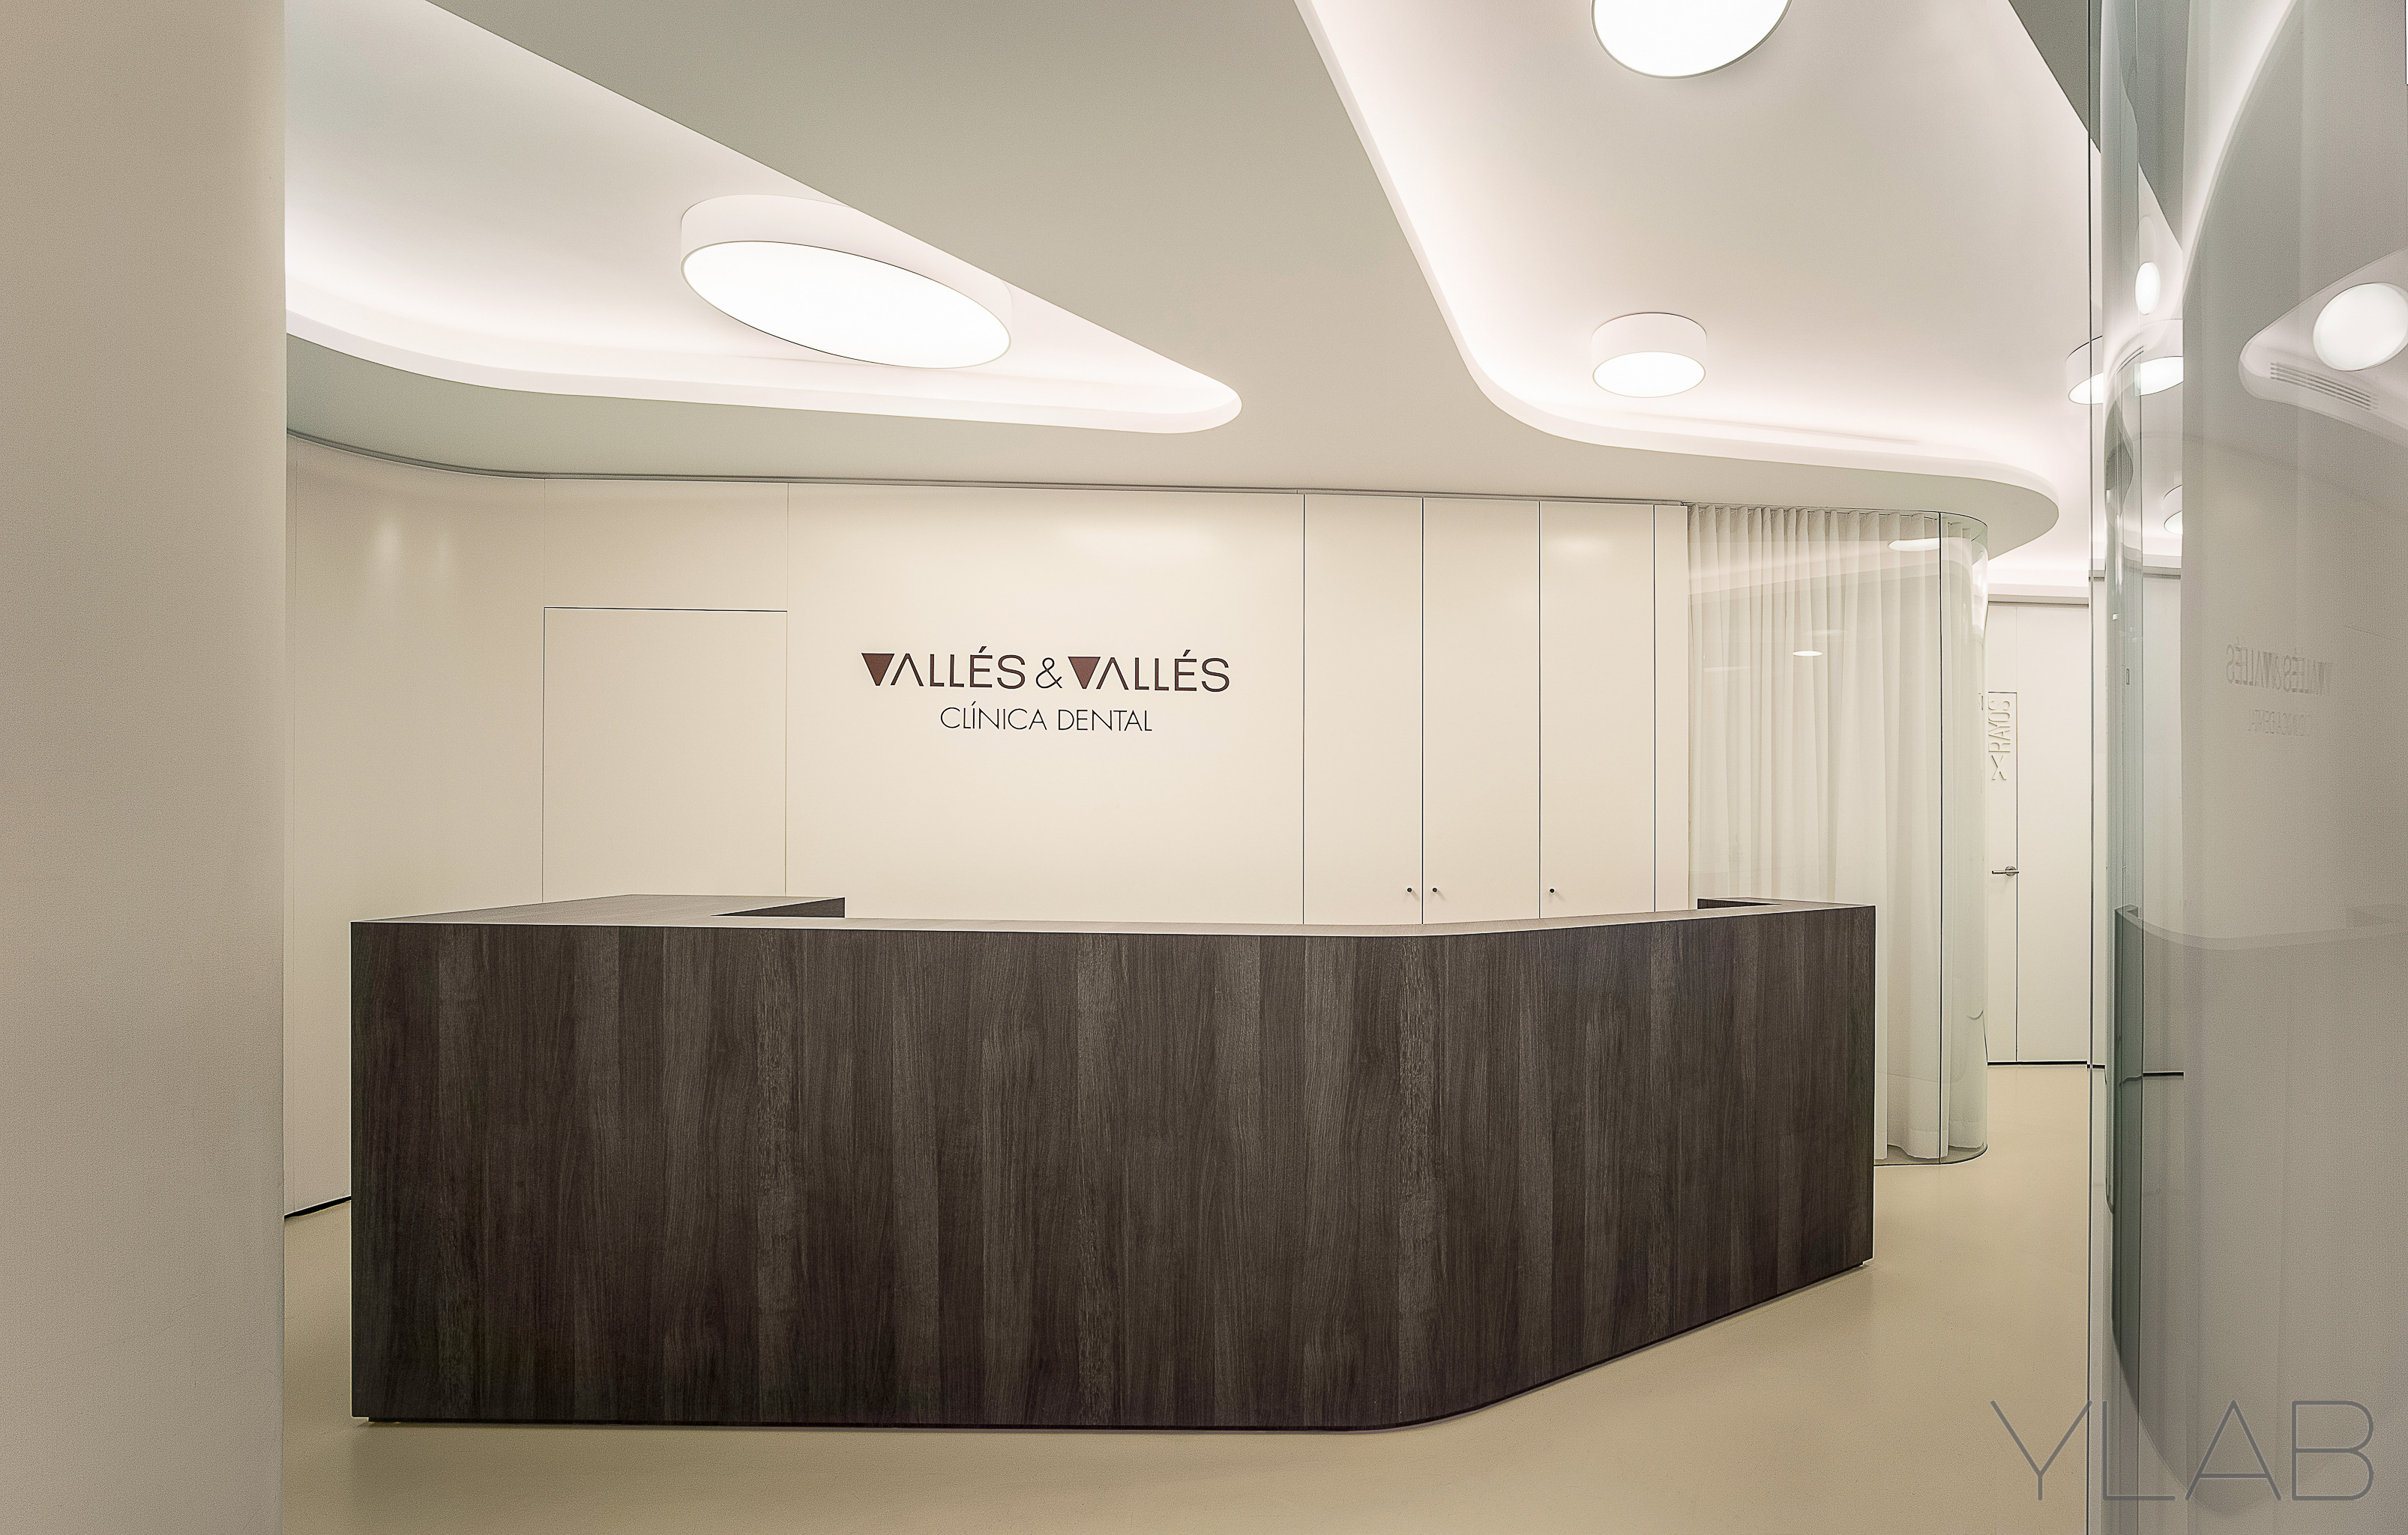 Dental office “Vallés & Vallés” | YLAB Arquitectos